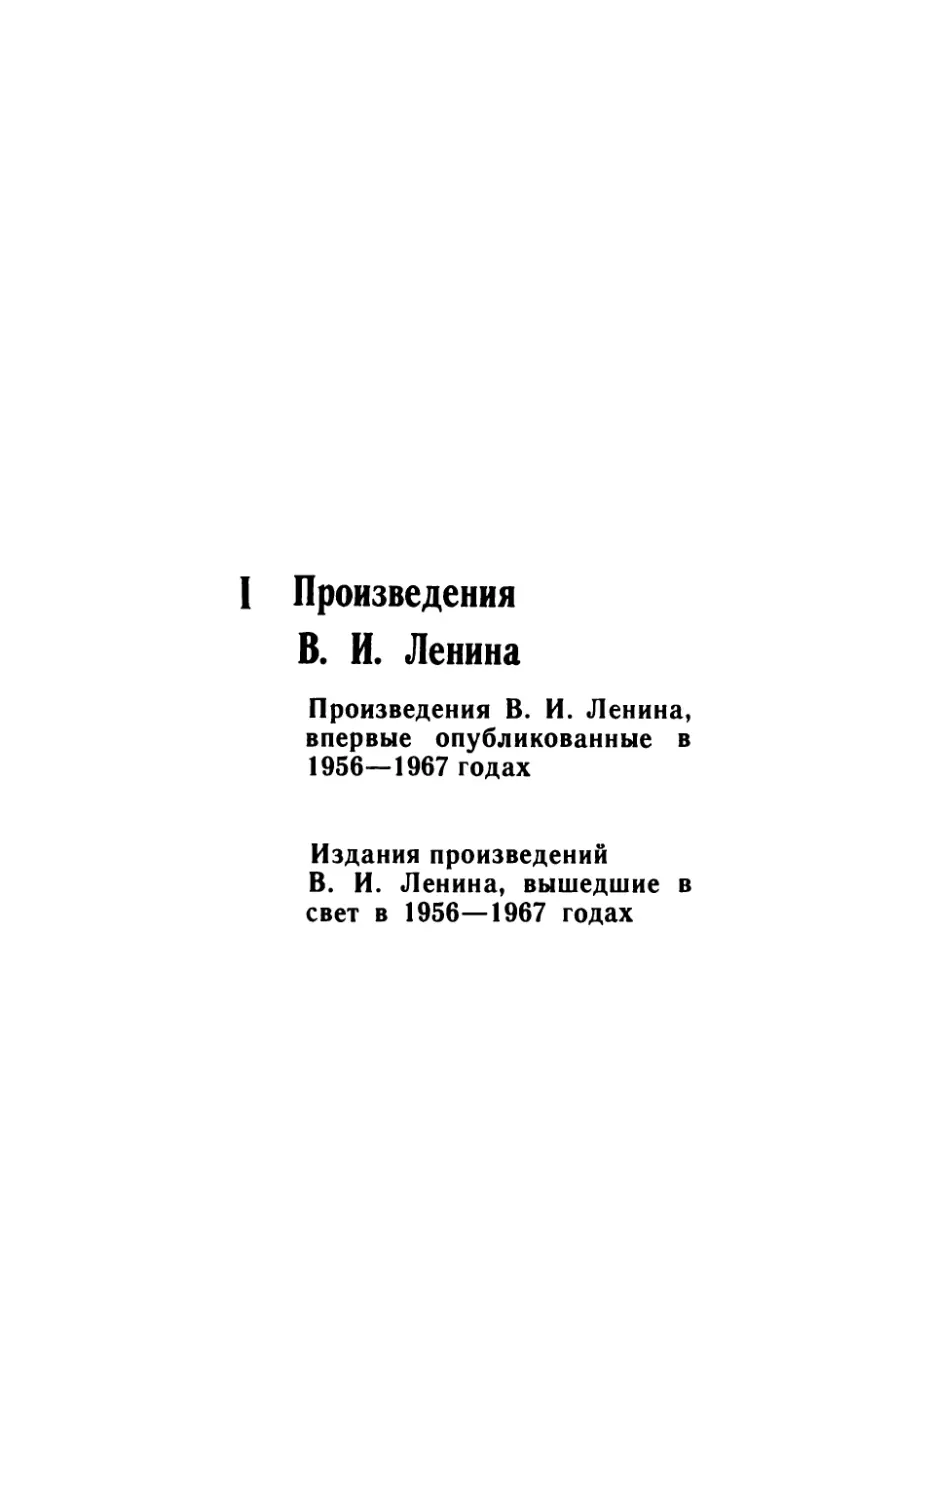 I. Произведения В. И. Ленина